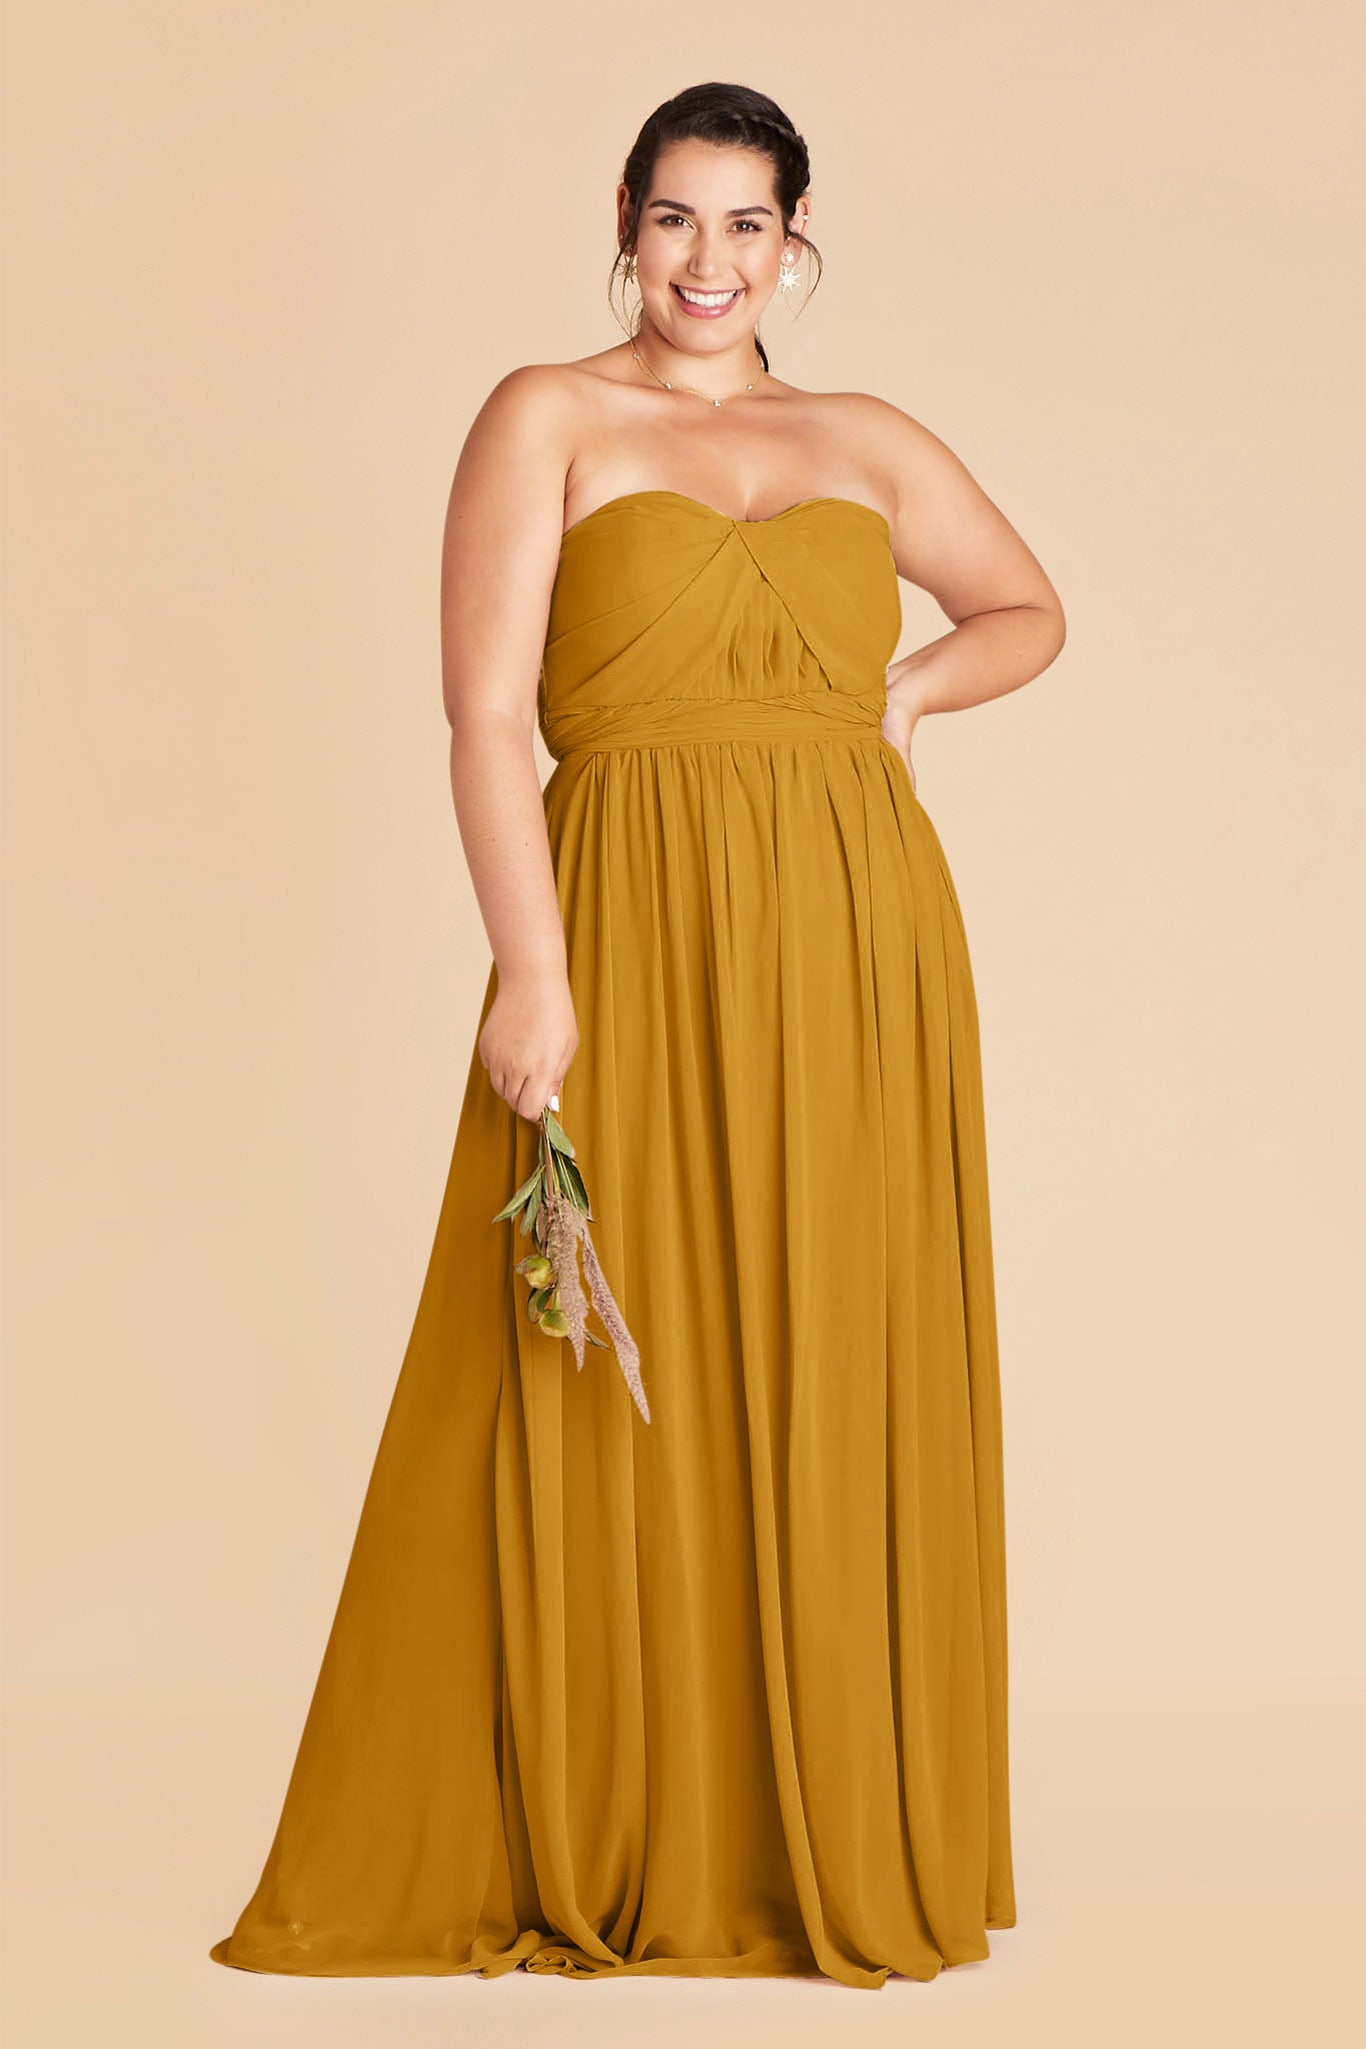 Chiffon Dress in Marigold by Birdy Grey